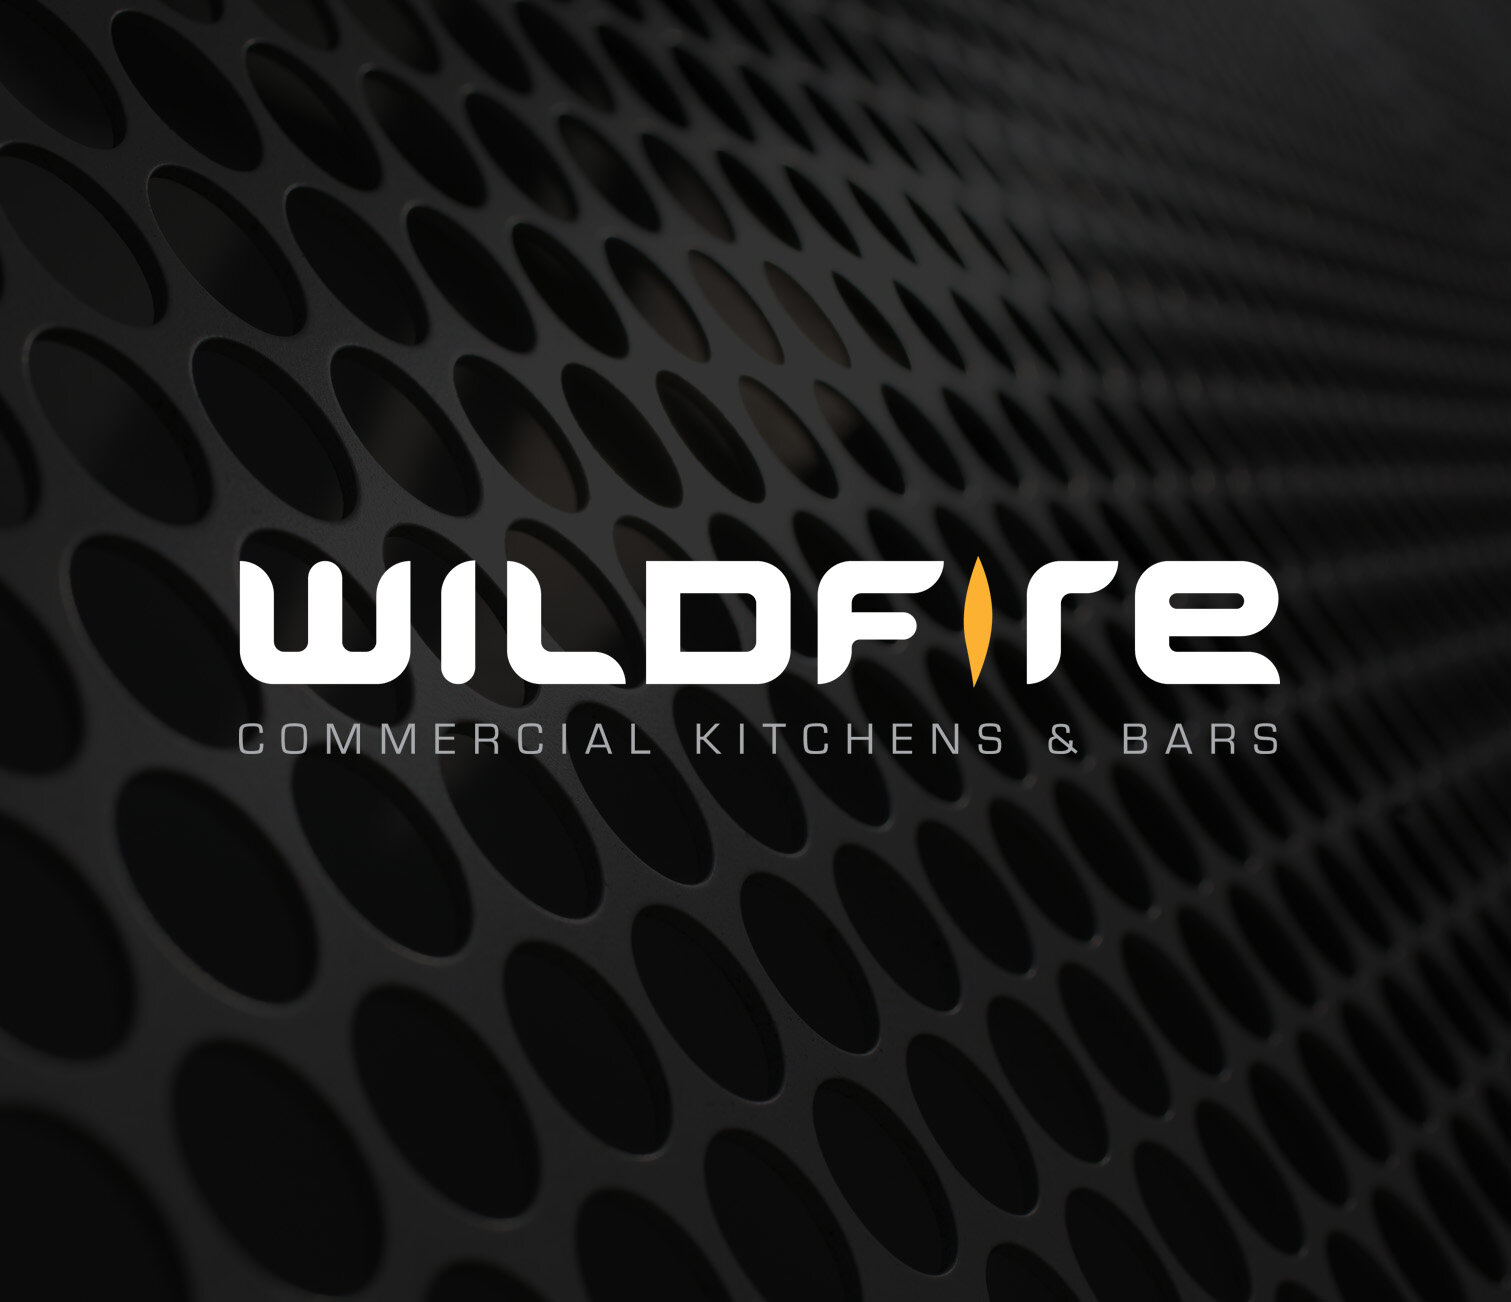 Wildfire branding